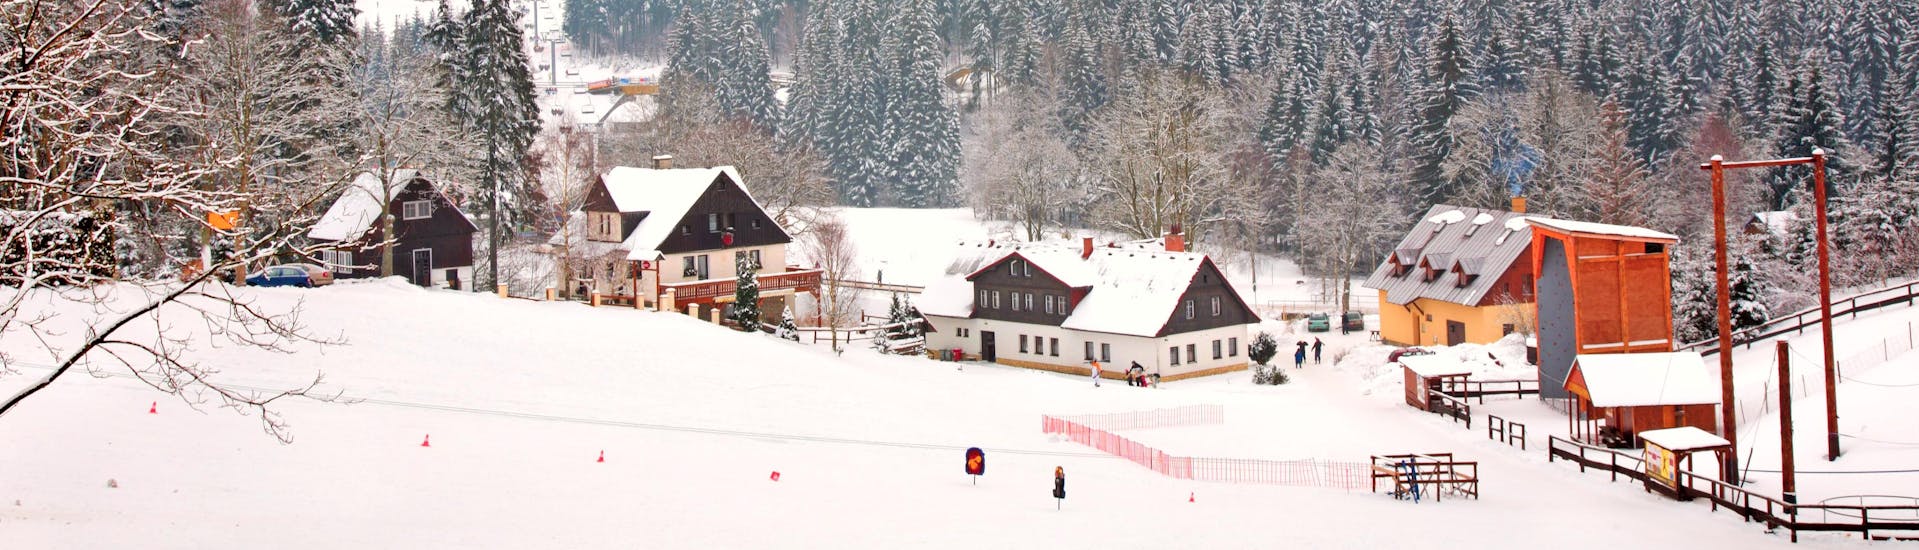 Bild einer kleinen Stadt in Certova Hora - Harrachov in der Tschechischen Republik im Winter